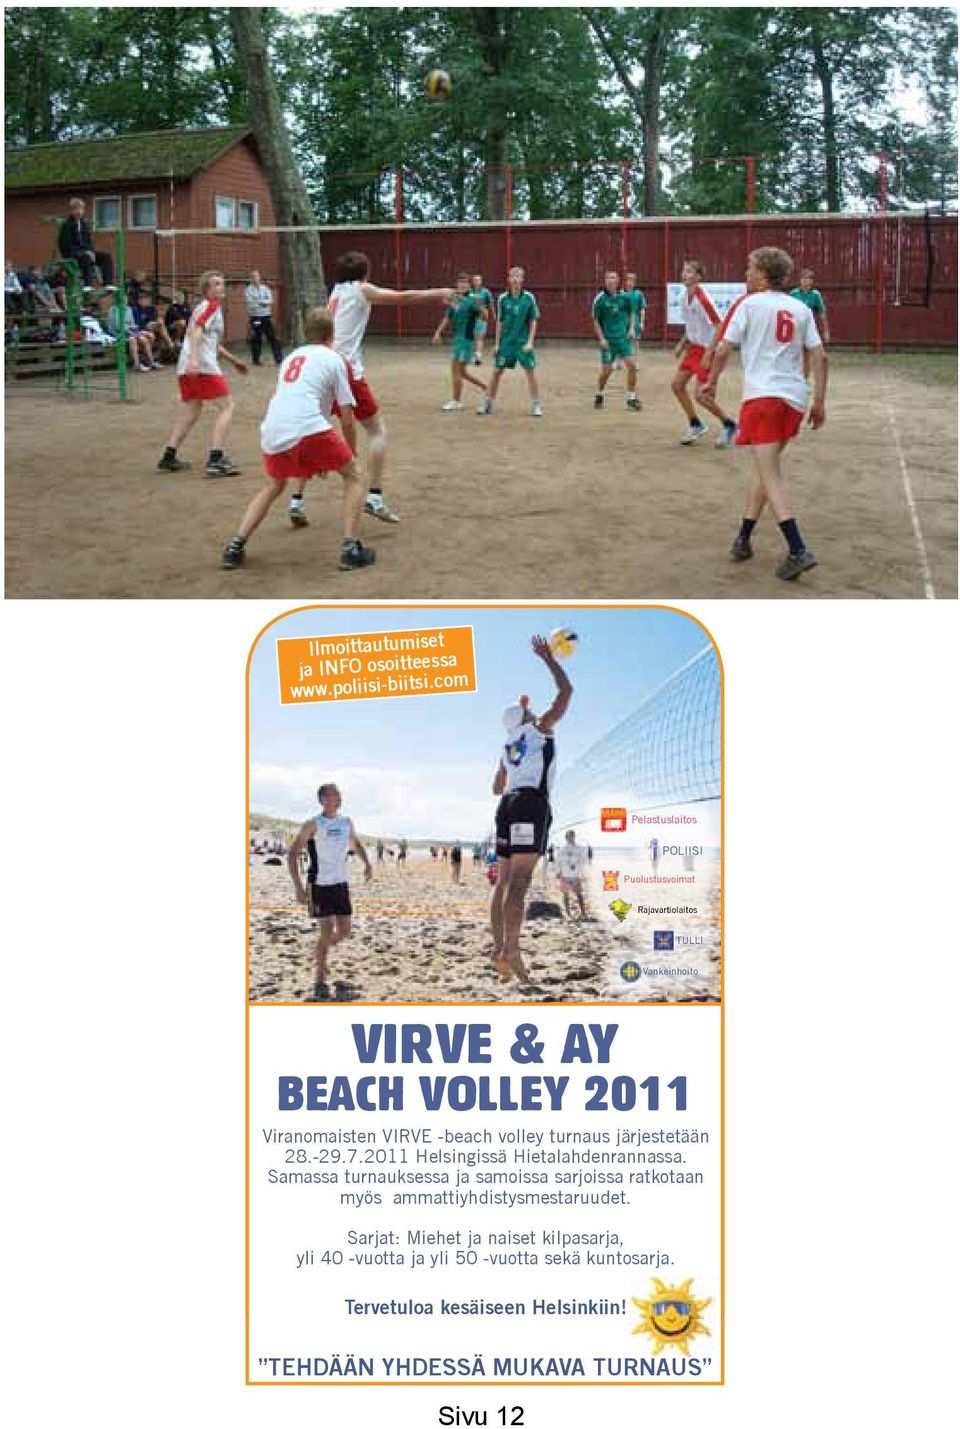 -beach volley turnaus järjestetään 28.-29.7.2011 Helsingissä Hietalahdenrannassa.